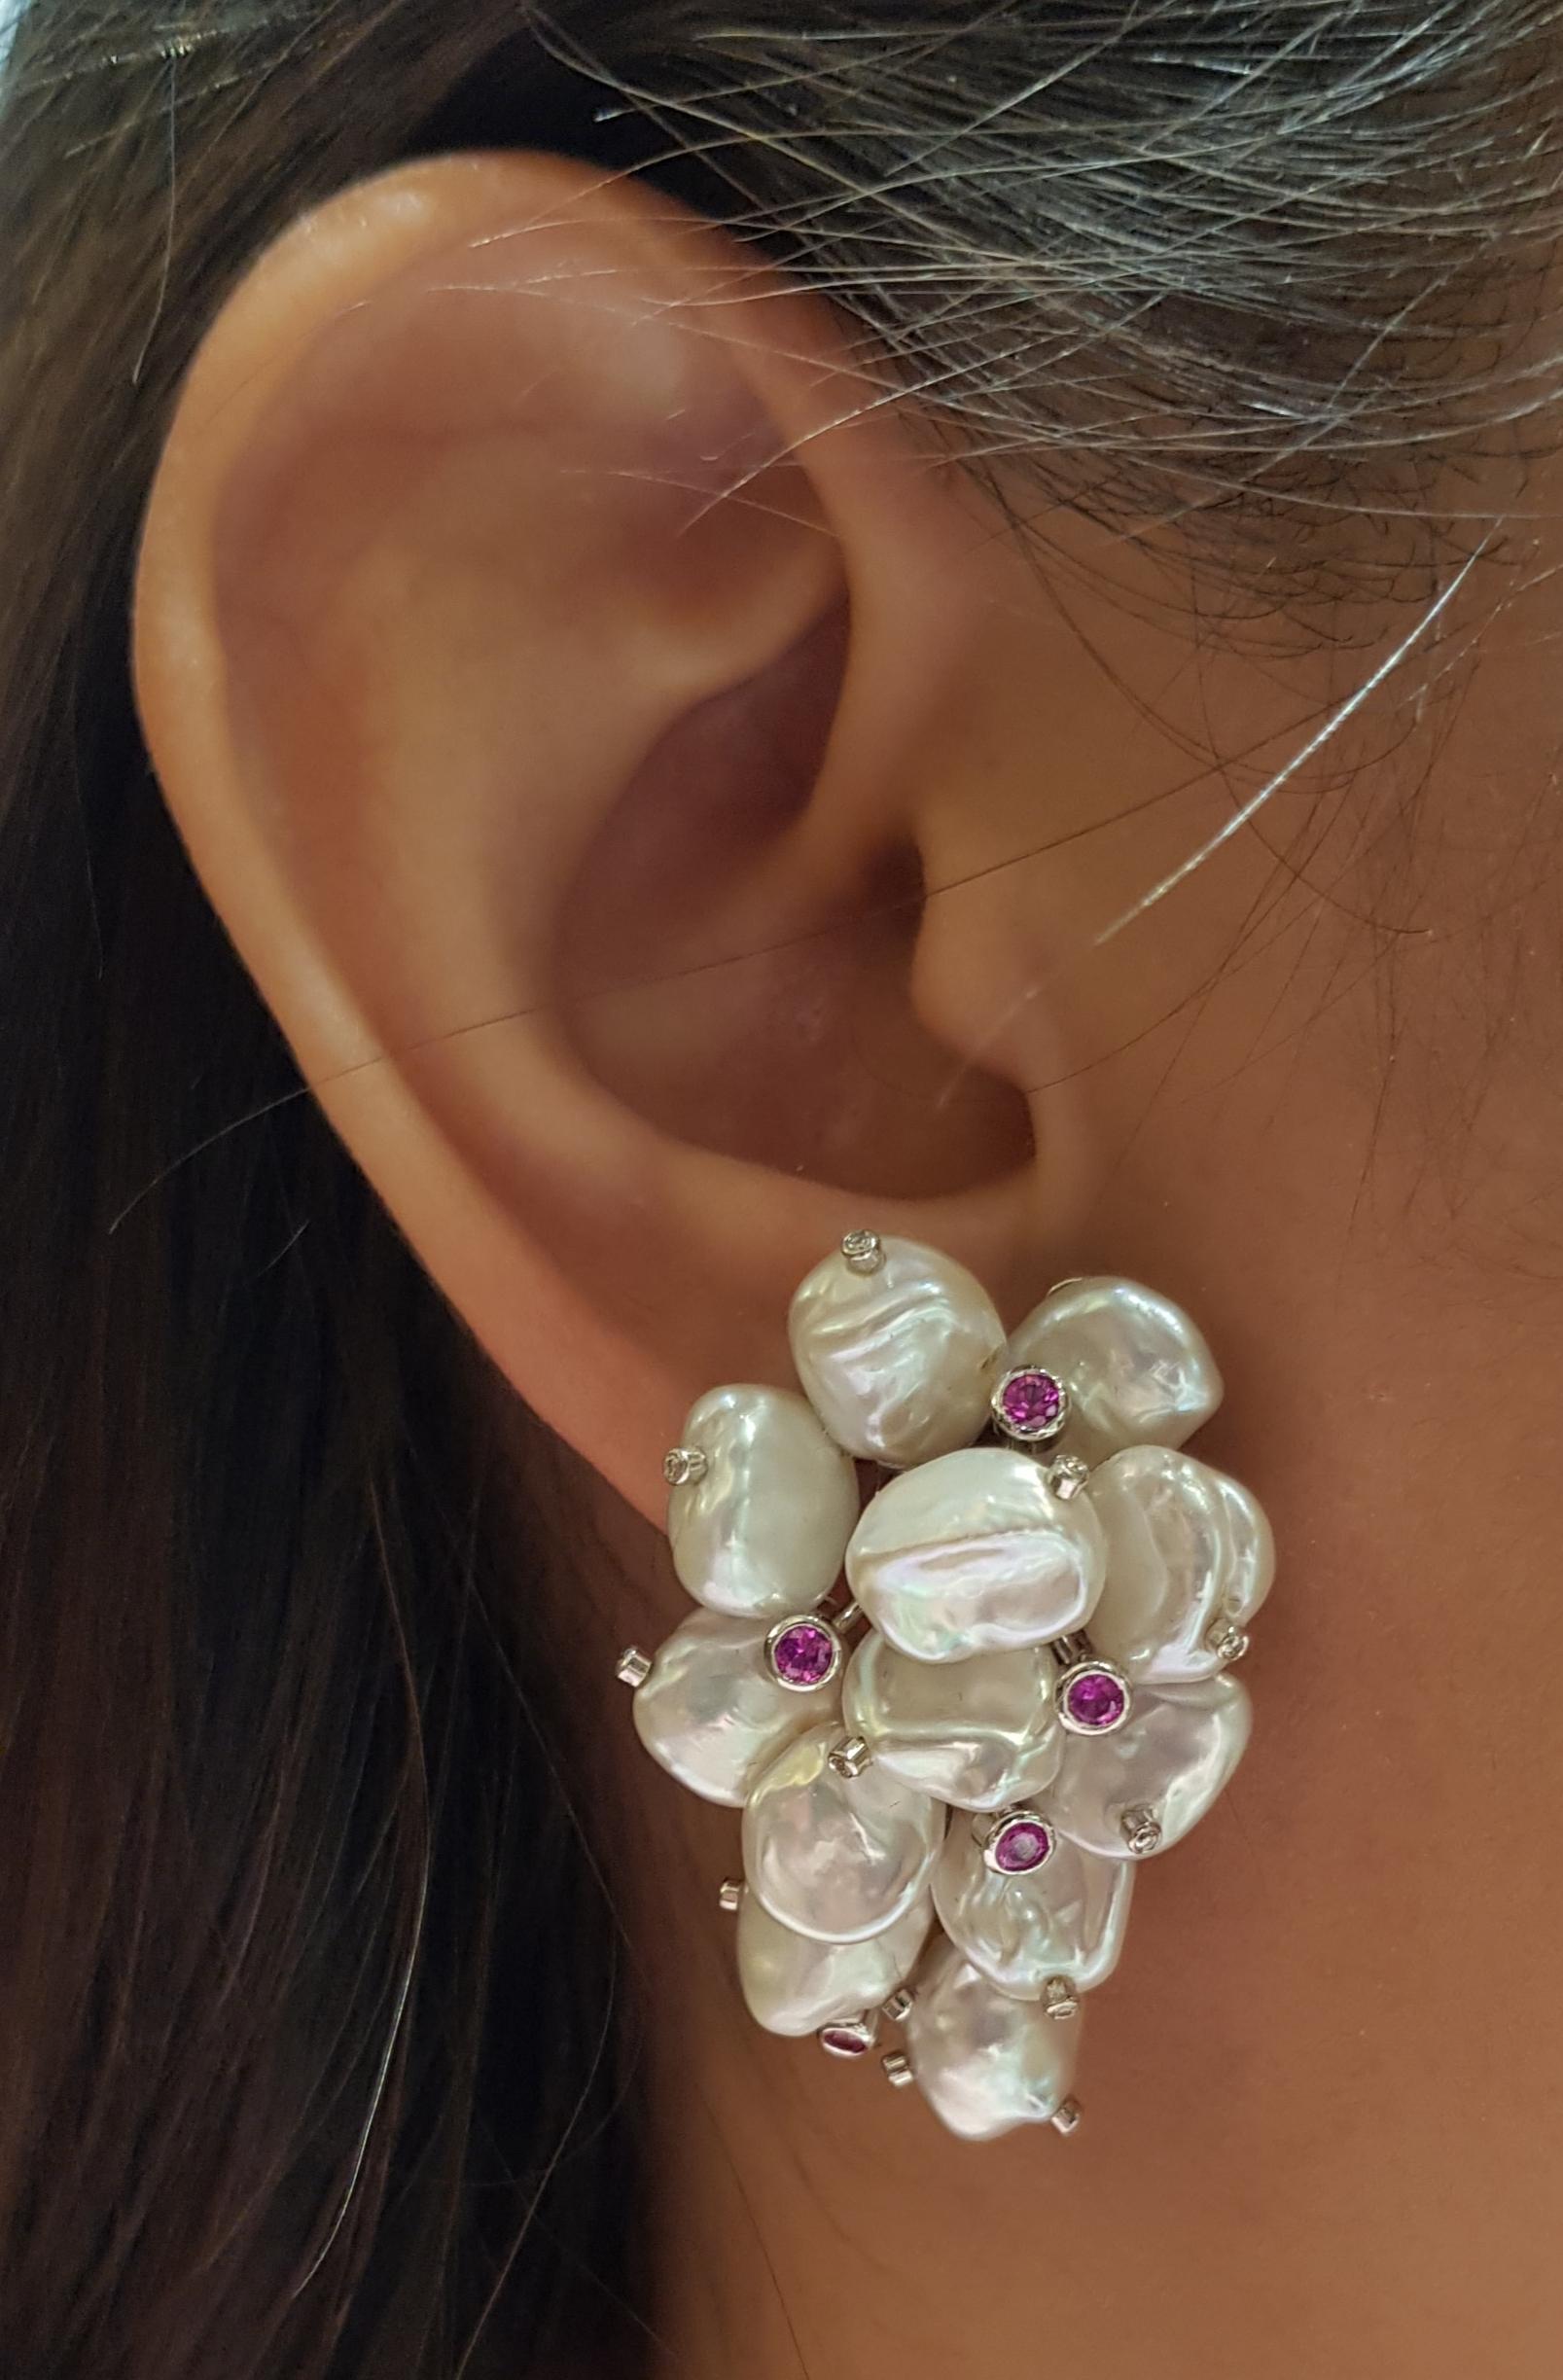 Boucles d'oreilles composées d'une perle, d'un saphir rose de 0,45 carat et d'un diamant de 0,16 carat sertis dans une monture en or blanc 18 carats

Largeur :  2.3 cm 
Longueur :  3.8 cm
Poids total : 24,54 grammes

